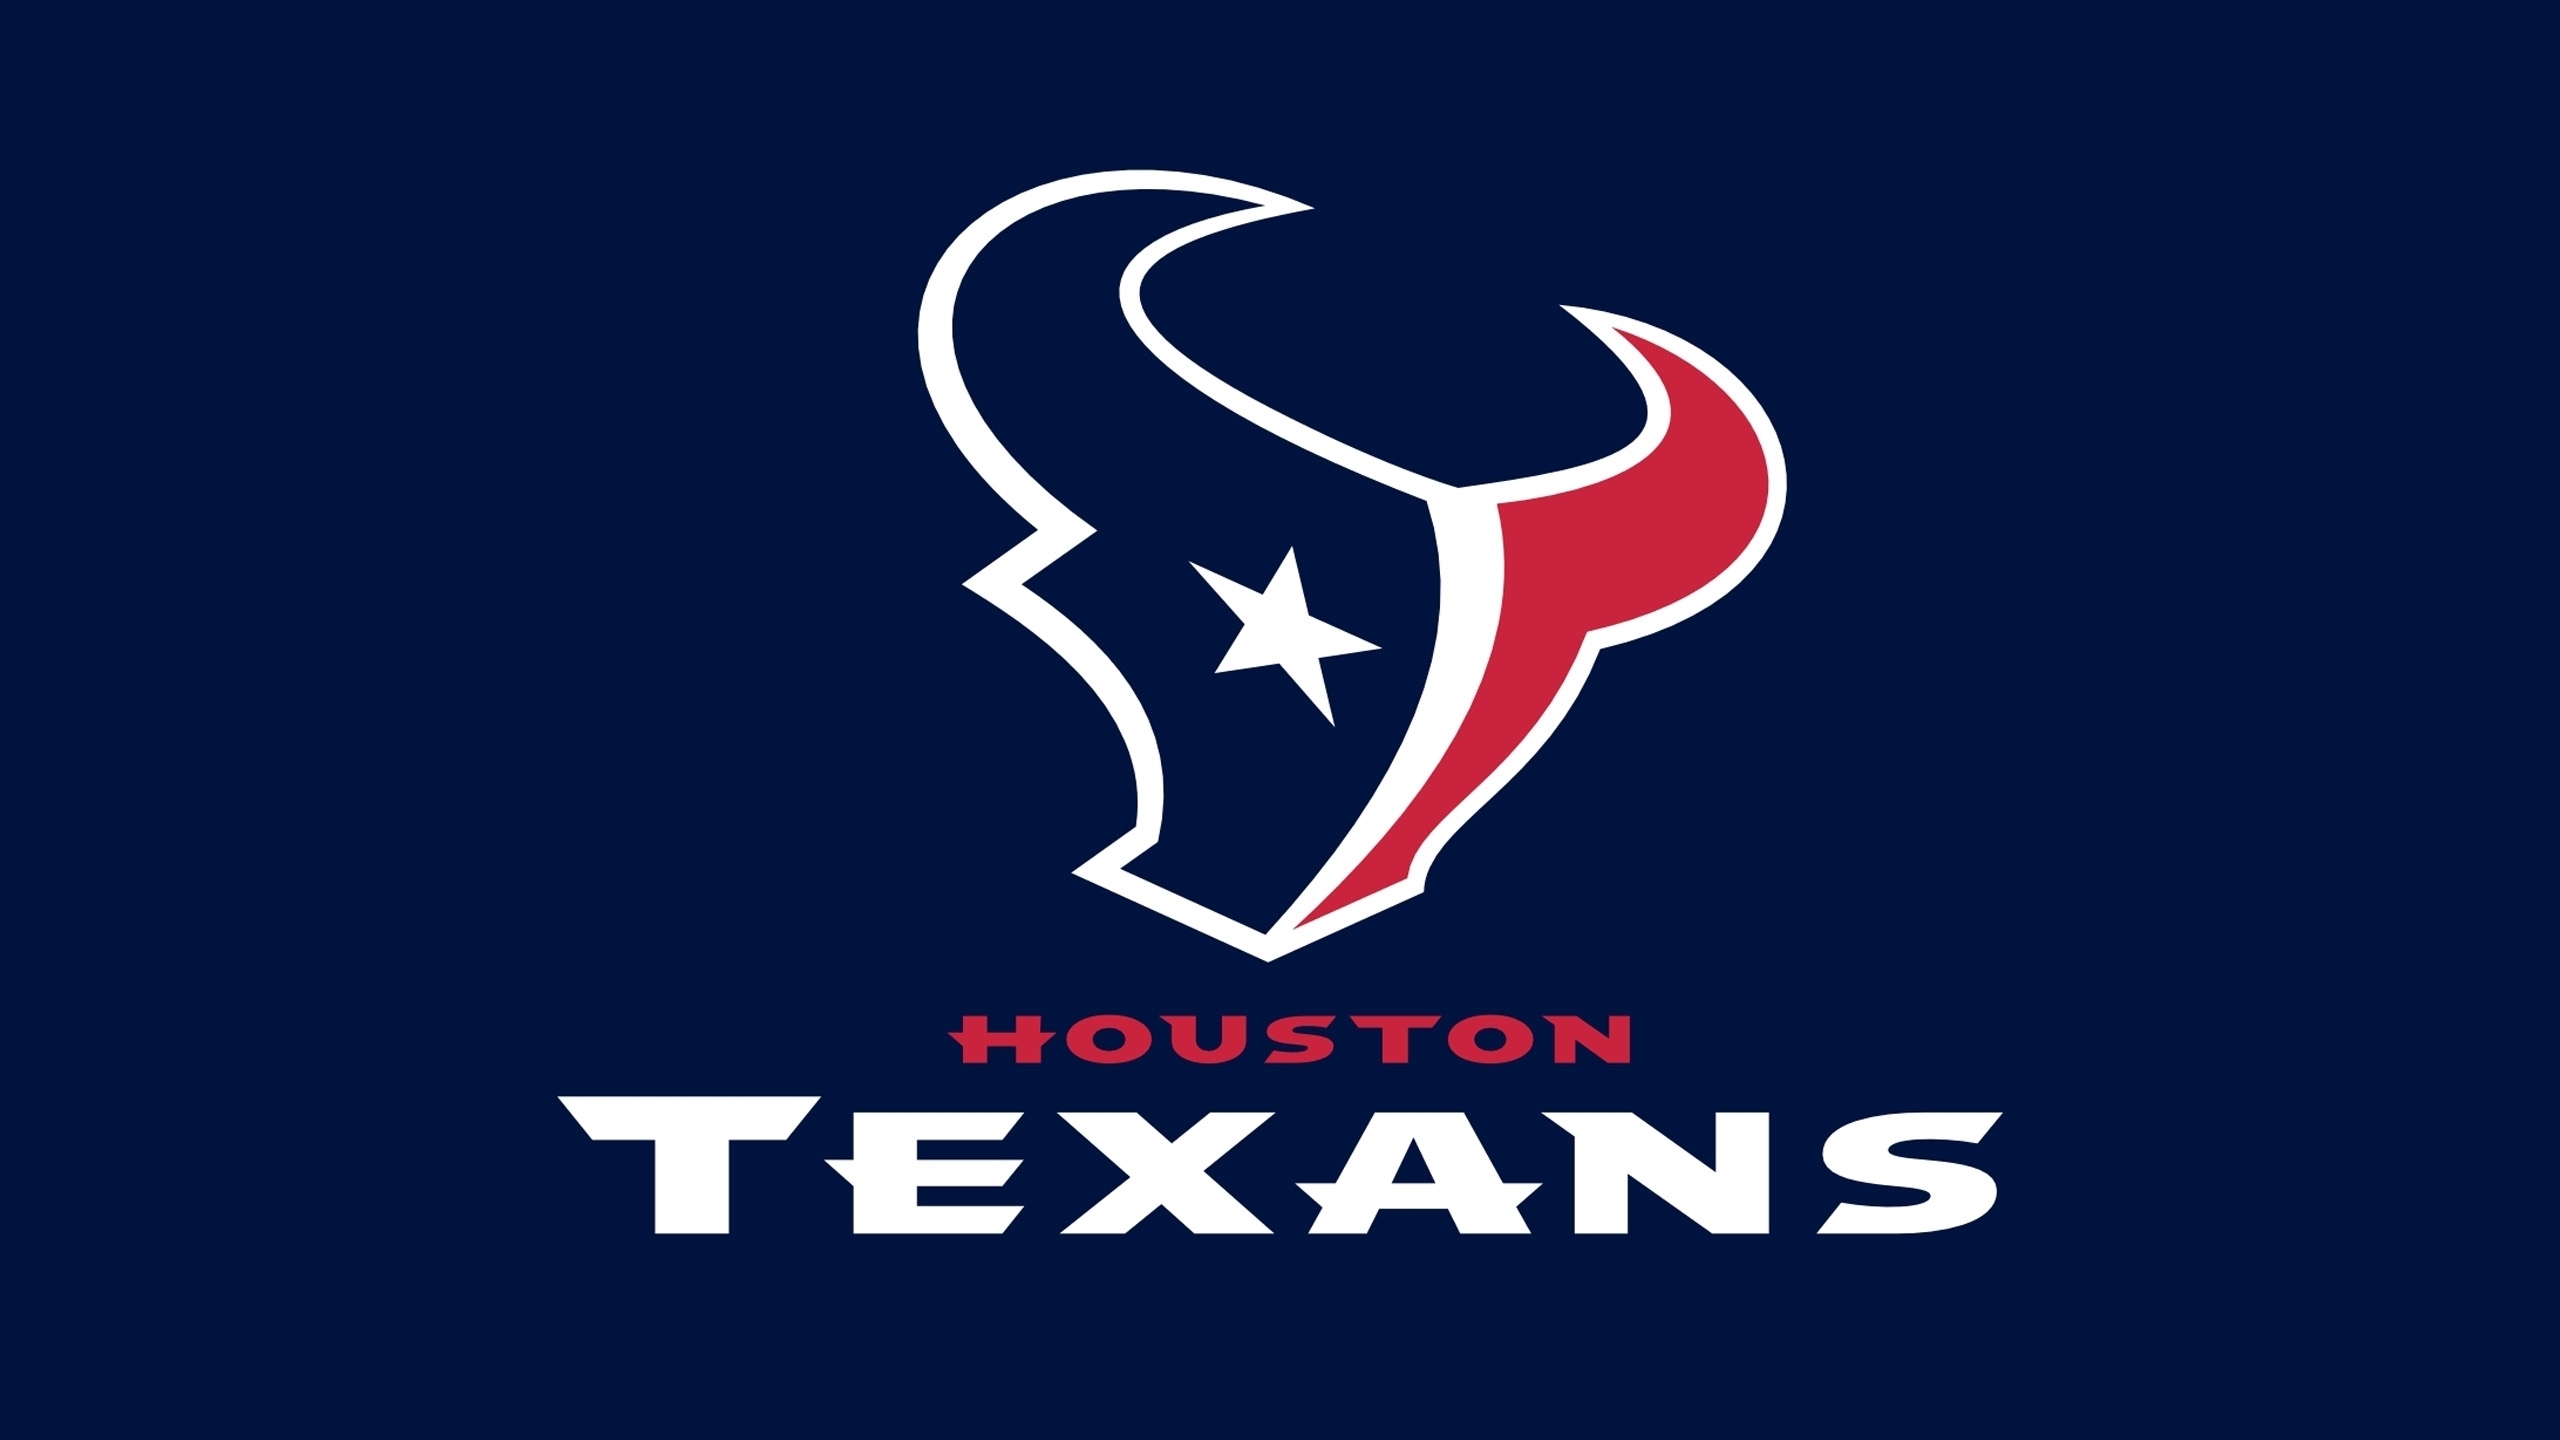 Houston Texans Logo for 2560x1440 HDTV resolution